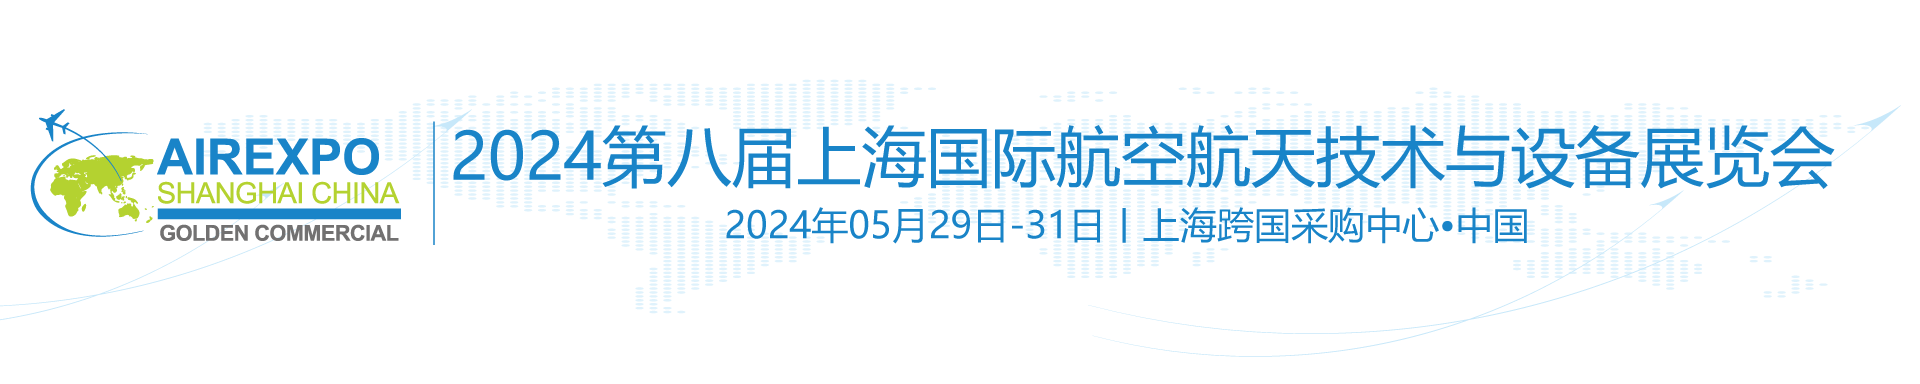 【官网】航展|上海航展|上海国际航空航天技术与设备展览会